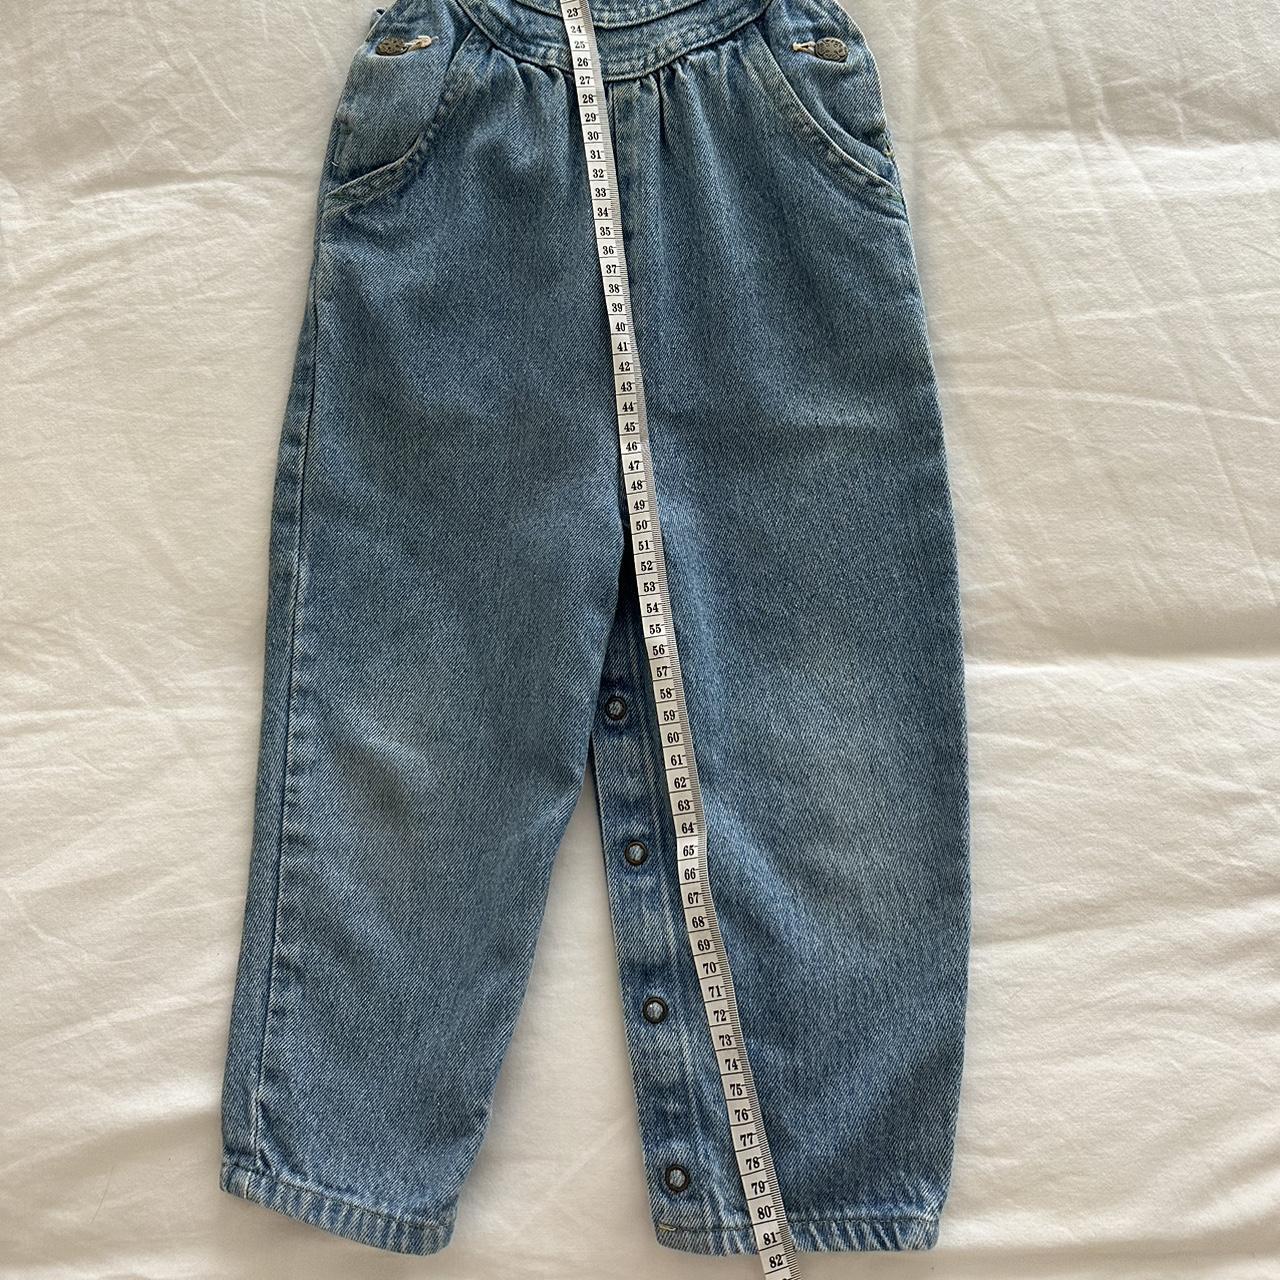 Oshkosh vintage denim overalls Size 3T made in... - Depop